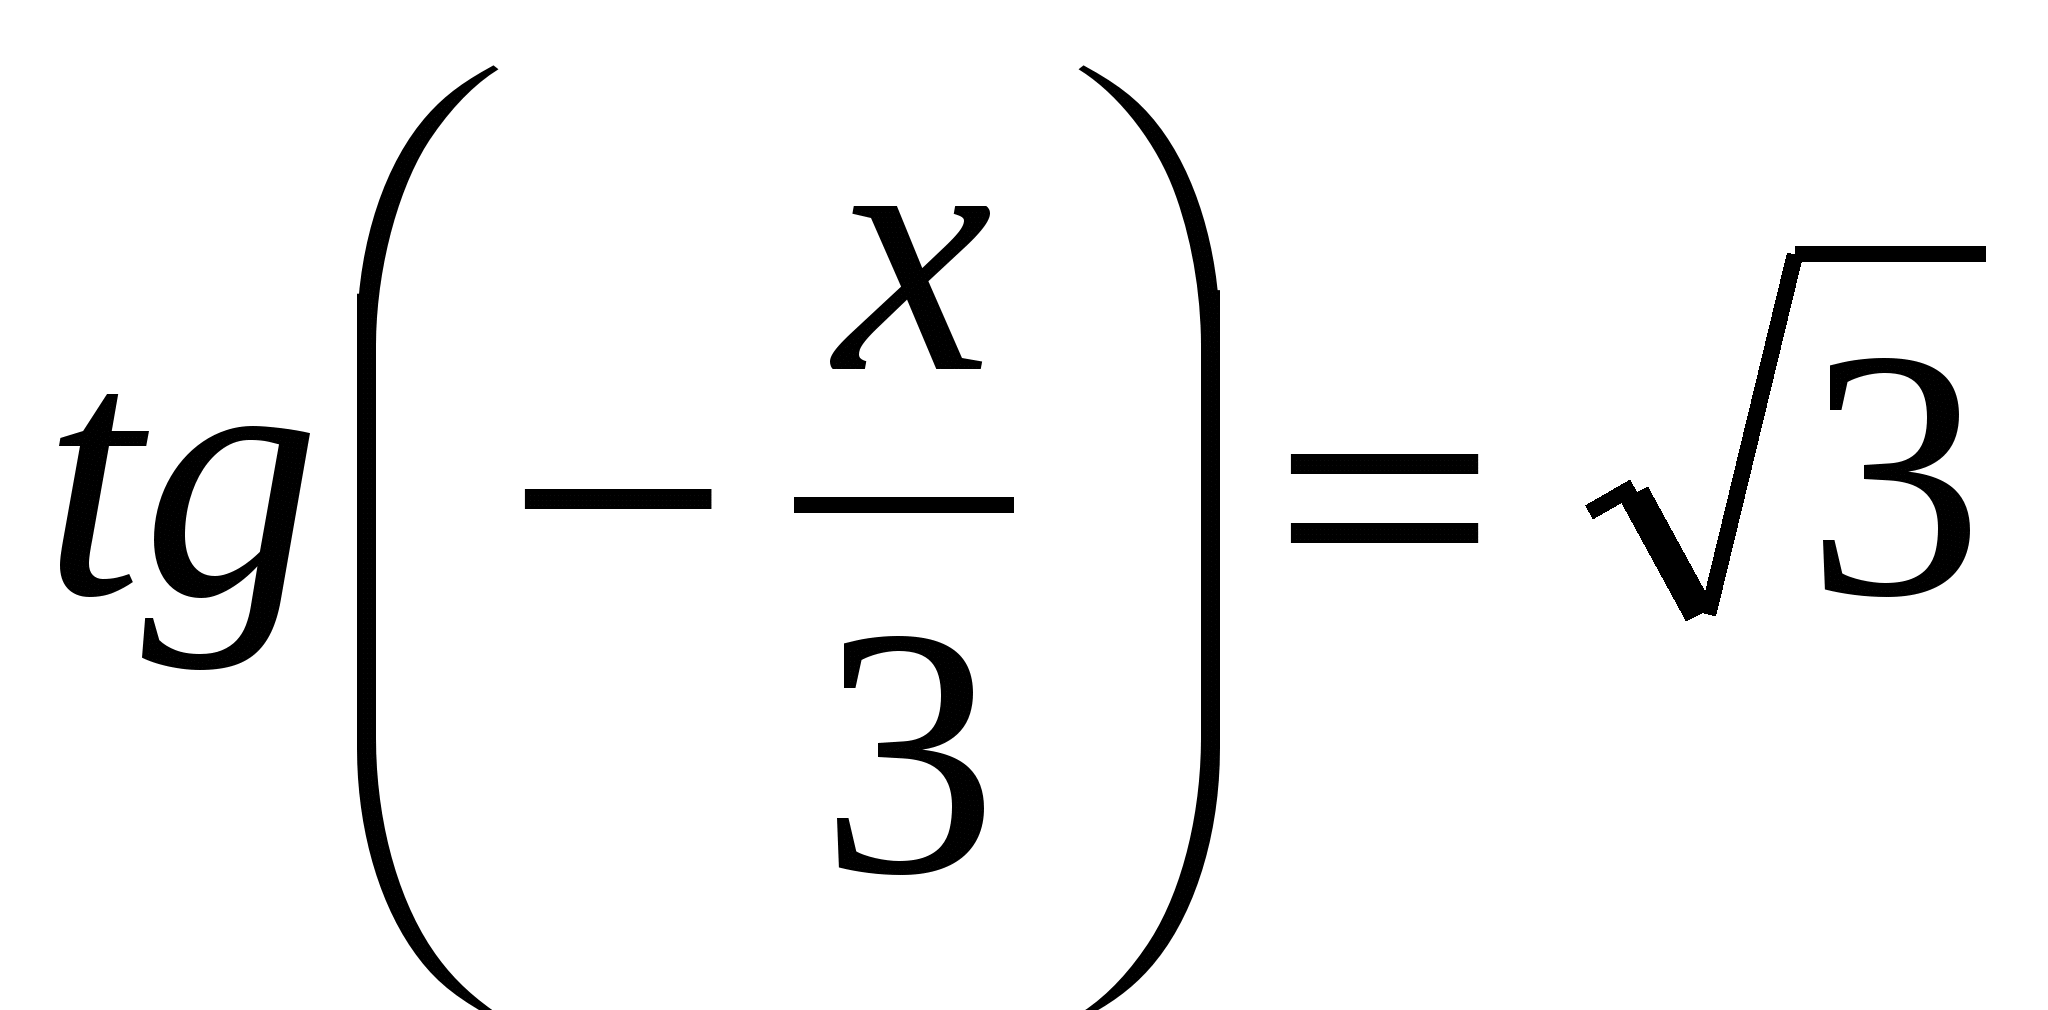 Решение простейших тригонометрических уравнений